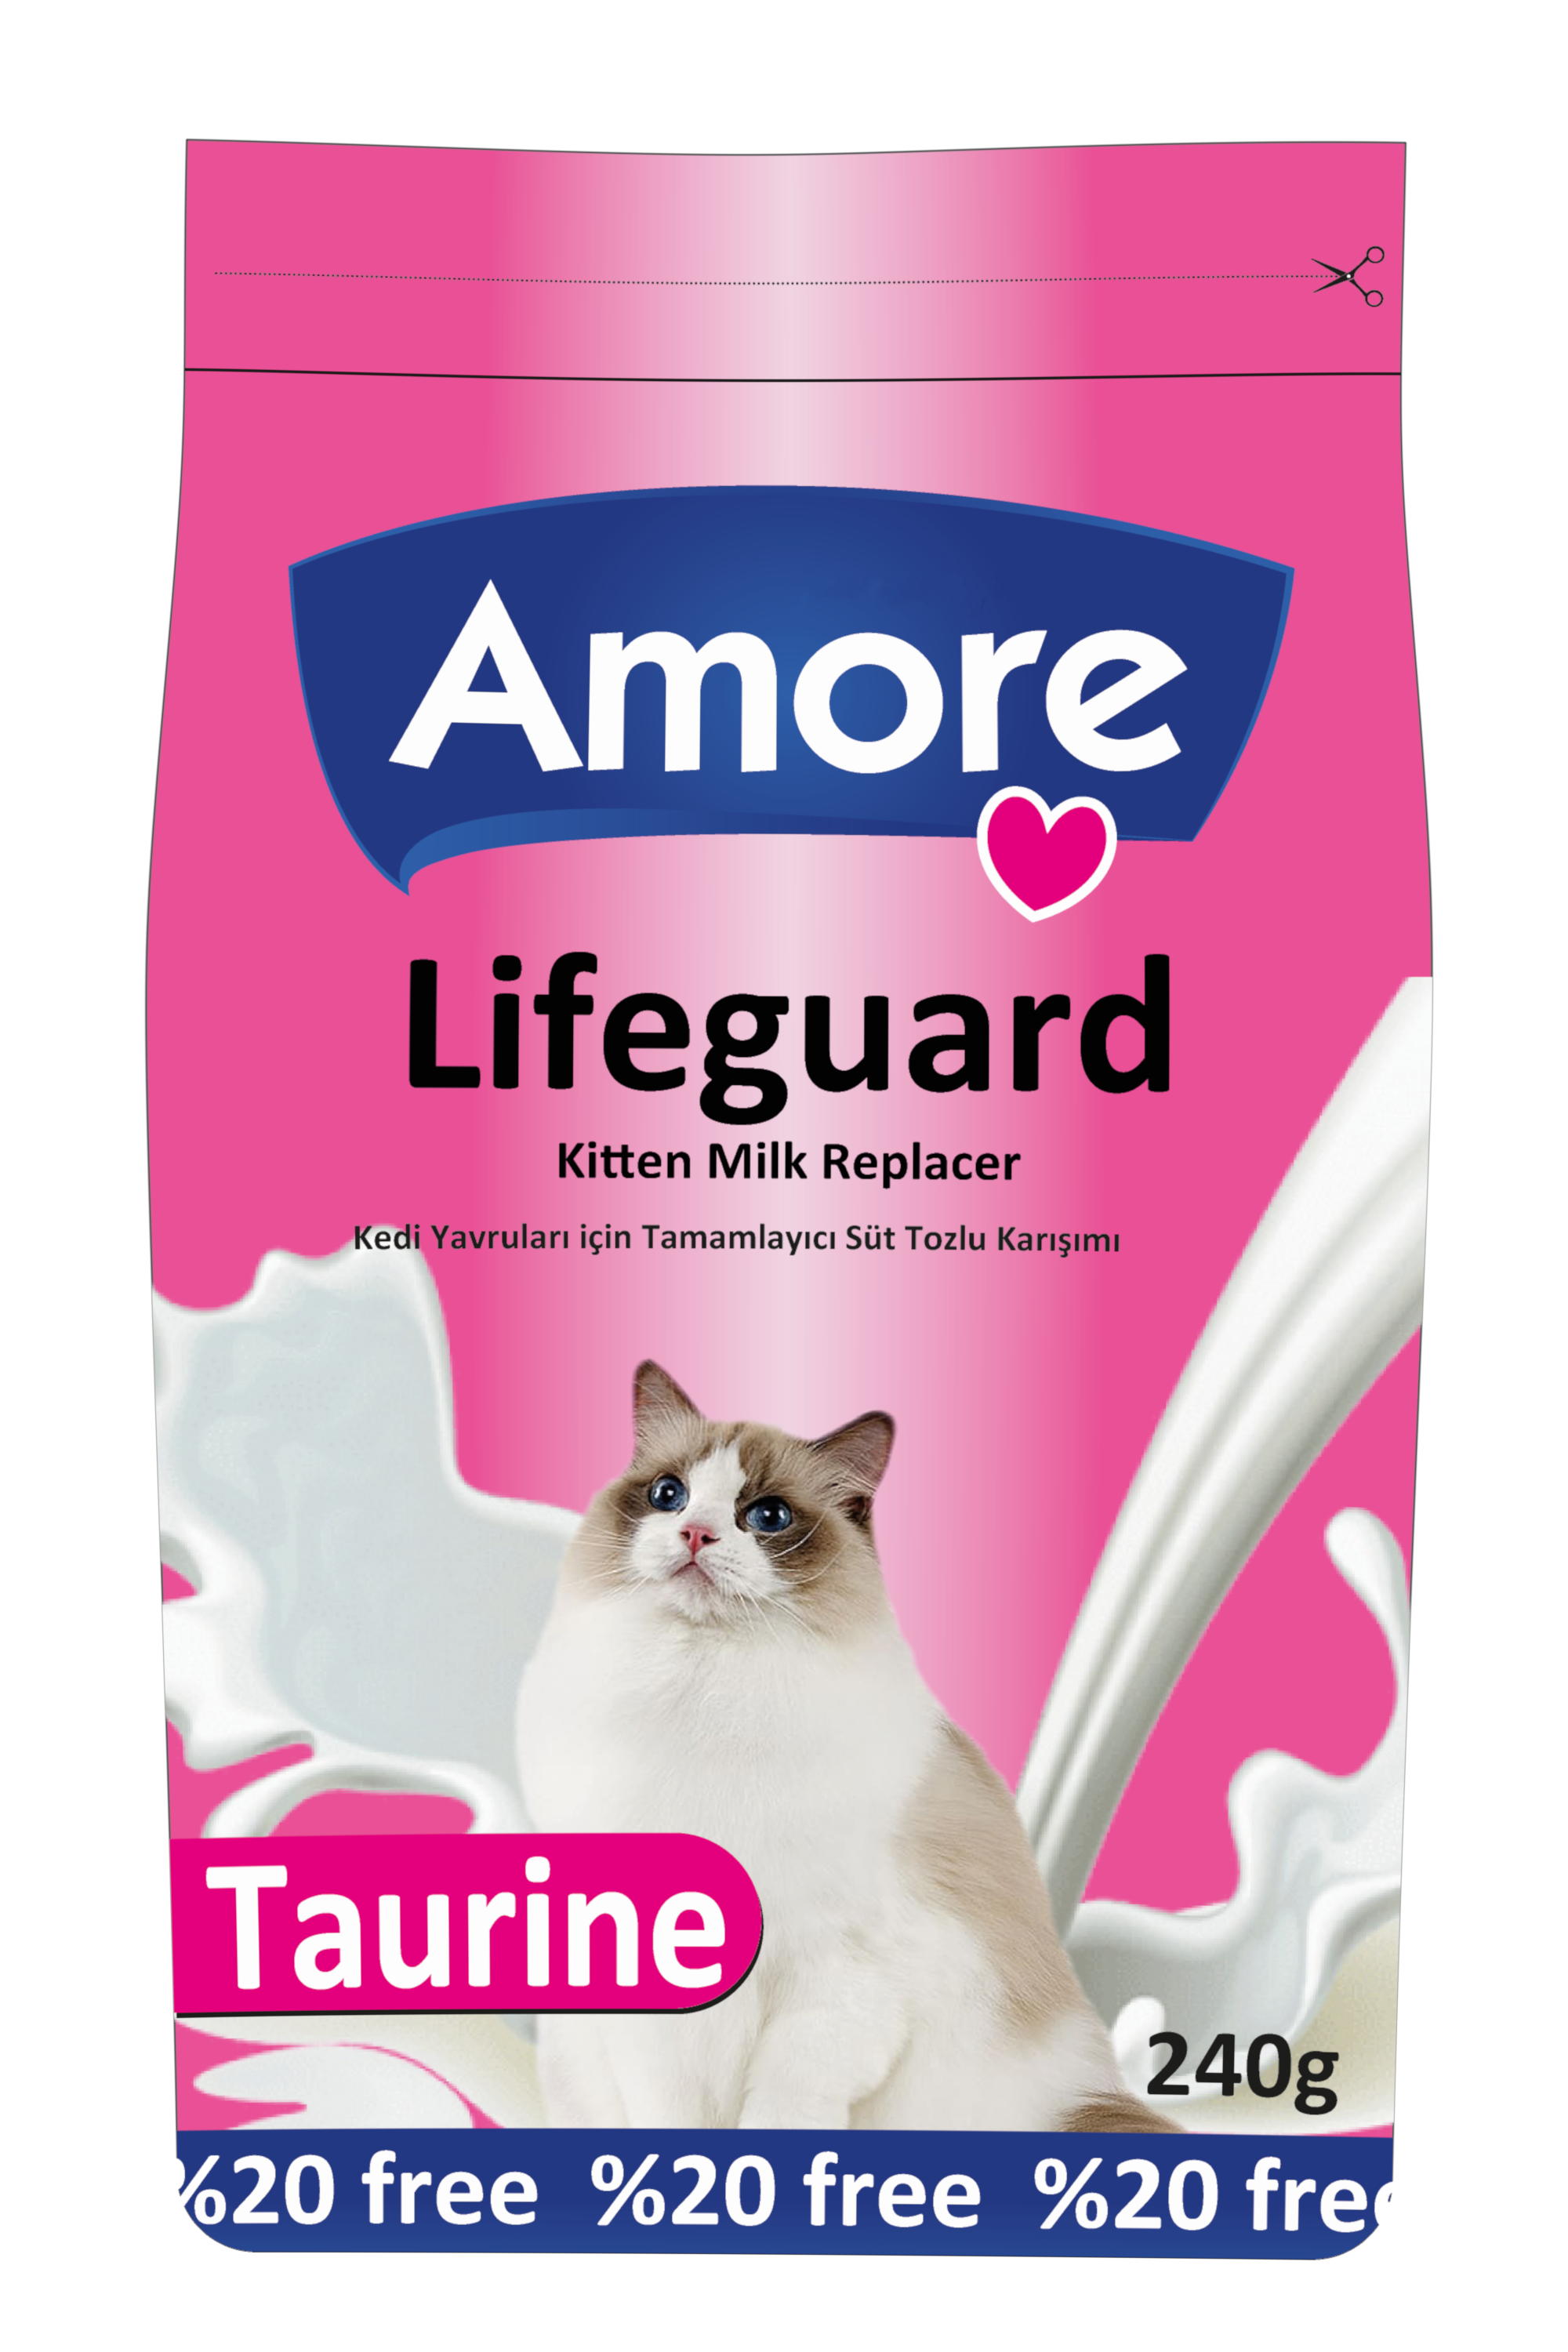 Amore LifeGuard Yavru Kedi Süt Tozu 240gr ve Omega Sed Pro Somon Balık Yağı 100 ml ve Biberon